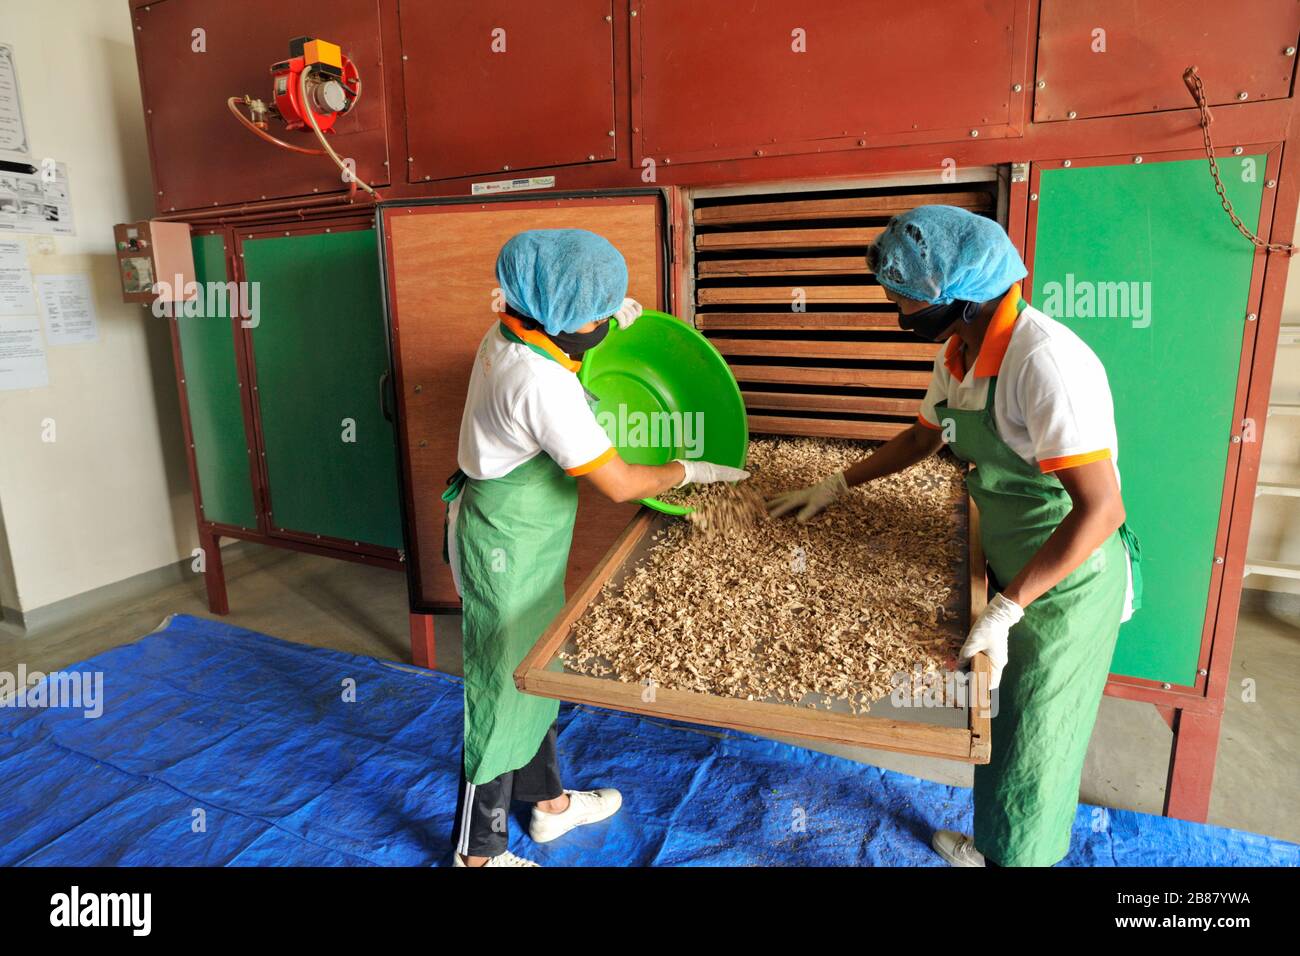 Sri Lanka, Monaragala, usine d'épices d'Ecowave, séchage au gingembre Banque D'Images